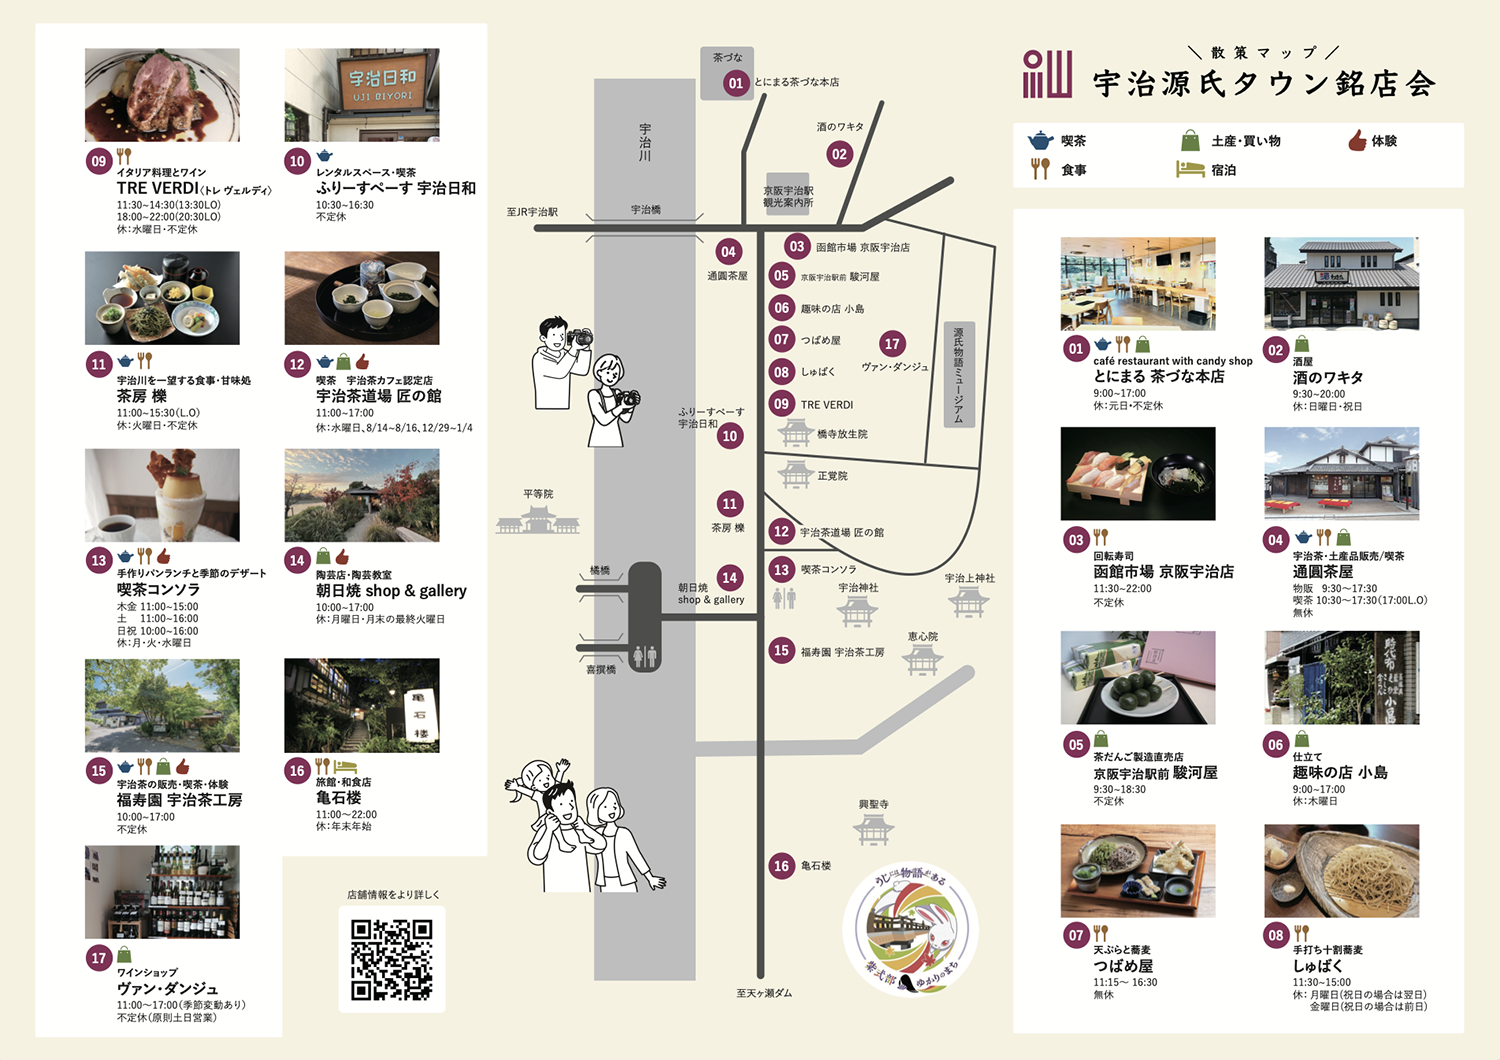 源氏タウン散策MAP